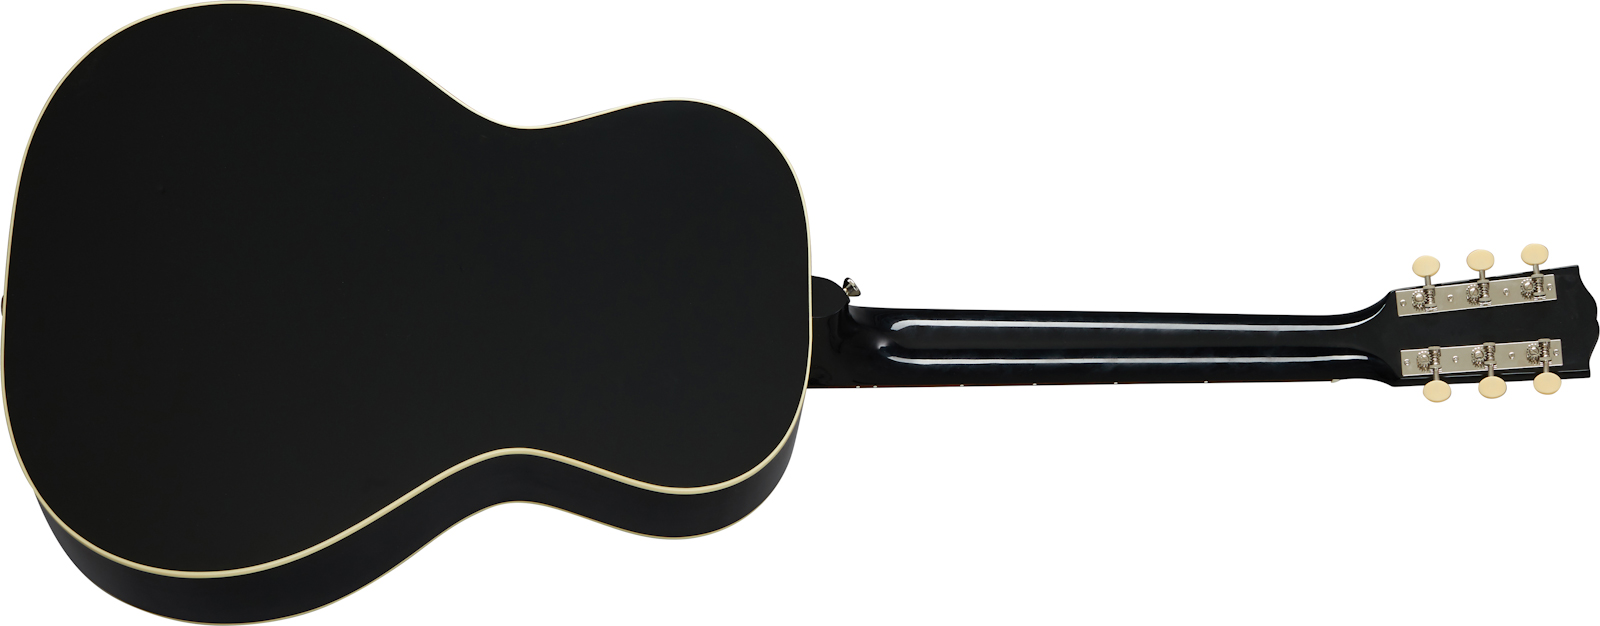 Gibson L-00 Original 2020 Parlor Epicea Acajou Rw - Ebony - Electro acoustic guitar - Variation 1